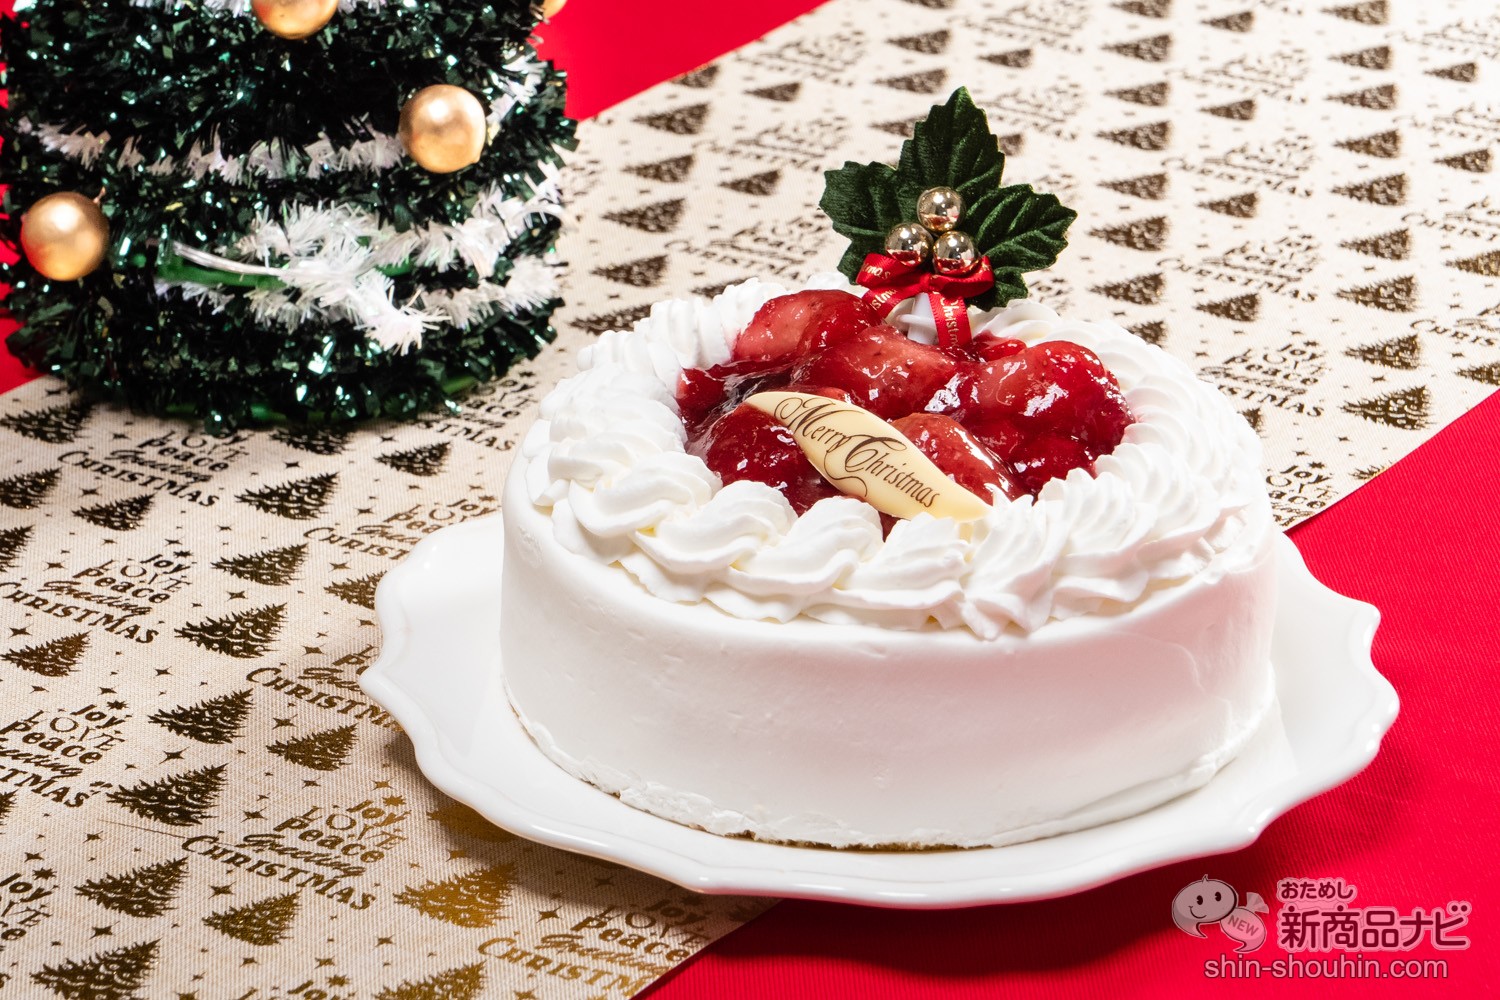 クリスマスケーキの定番 苺たっぷりの贅沢ショートケーキをお取り寄せ 新宿kojimaya 苺と木の実のショートケーキ5号 おためし新商品ナビ